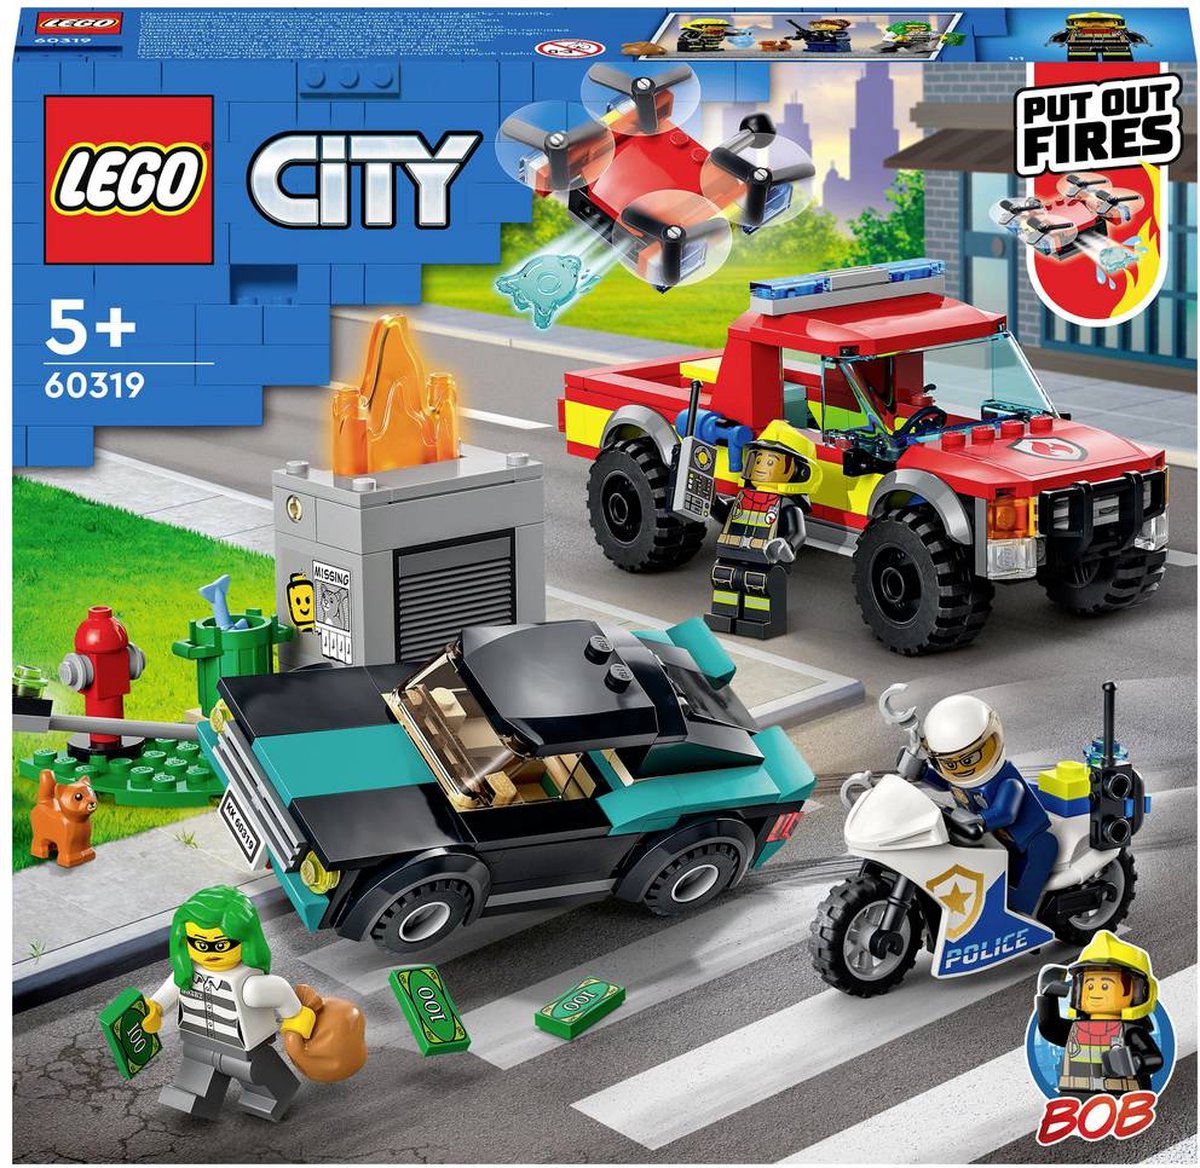 Afbeelding van product LEGO 60319 City brandweer en politie achtervolging